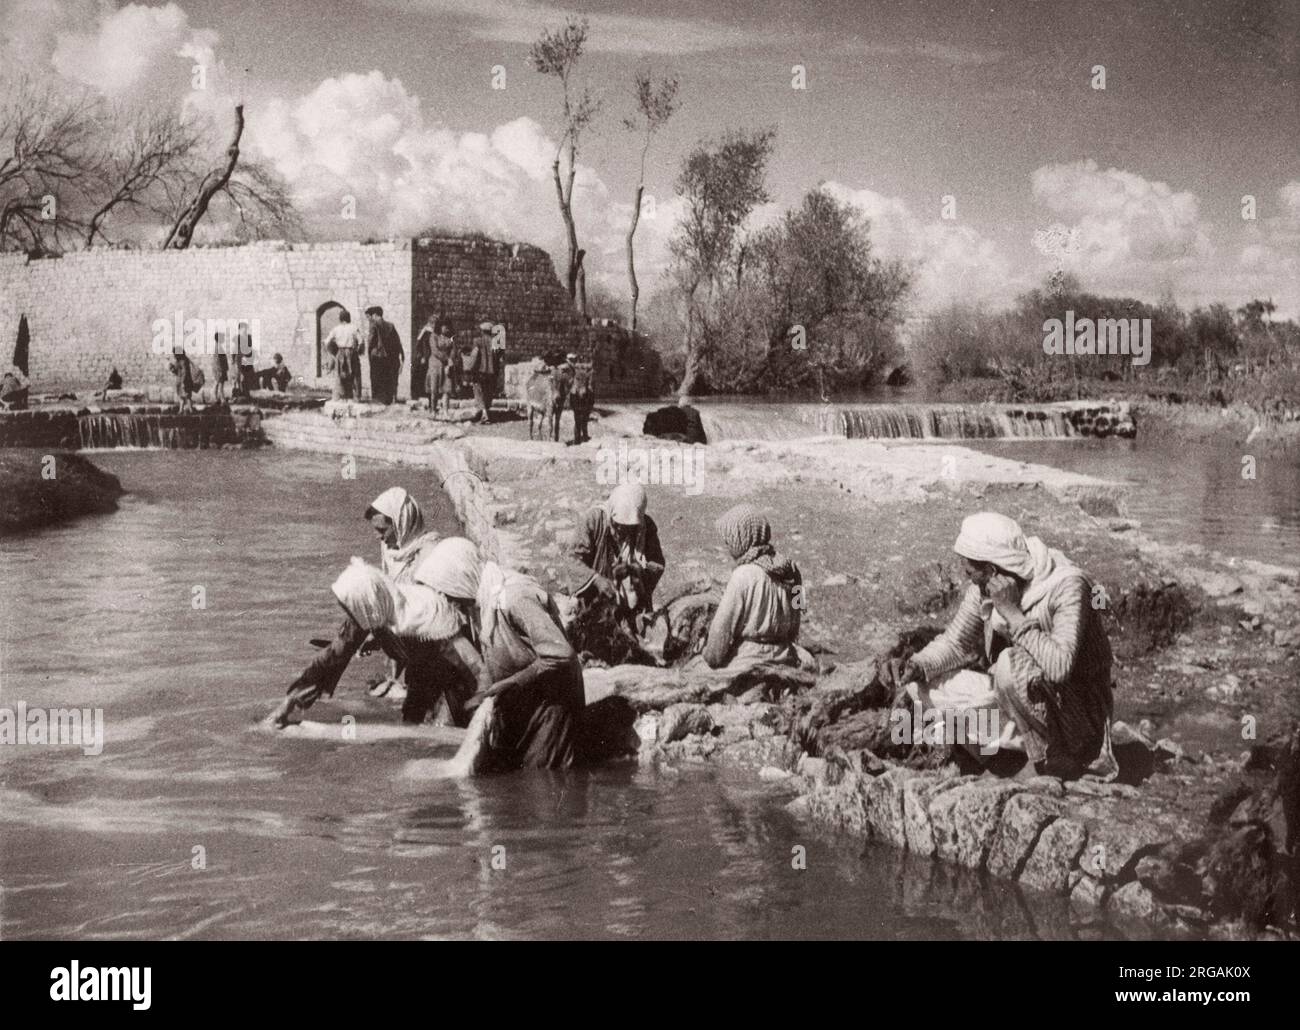 1943 Moyen-Orient Syrie - scène à Alep - femmes lavant des vêtements dans une rivière Photographie par un officier de recrutement de l'armée britannique stationnée en Afrique de l'est et au Moyen-Orient pendant la Seconde Guerre mondiale Banque D'Images